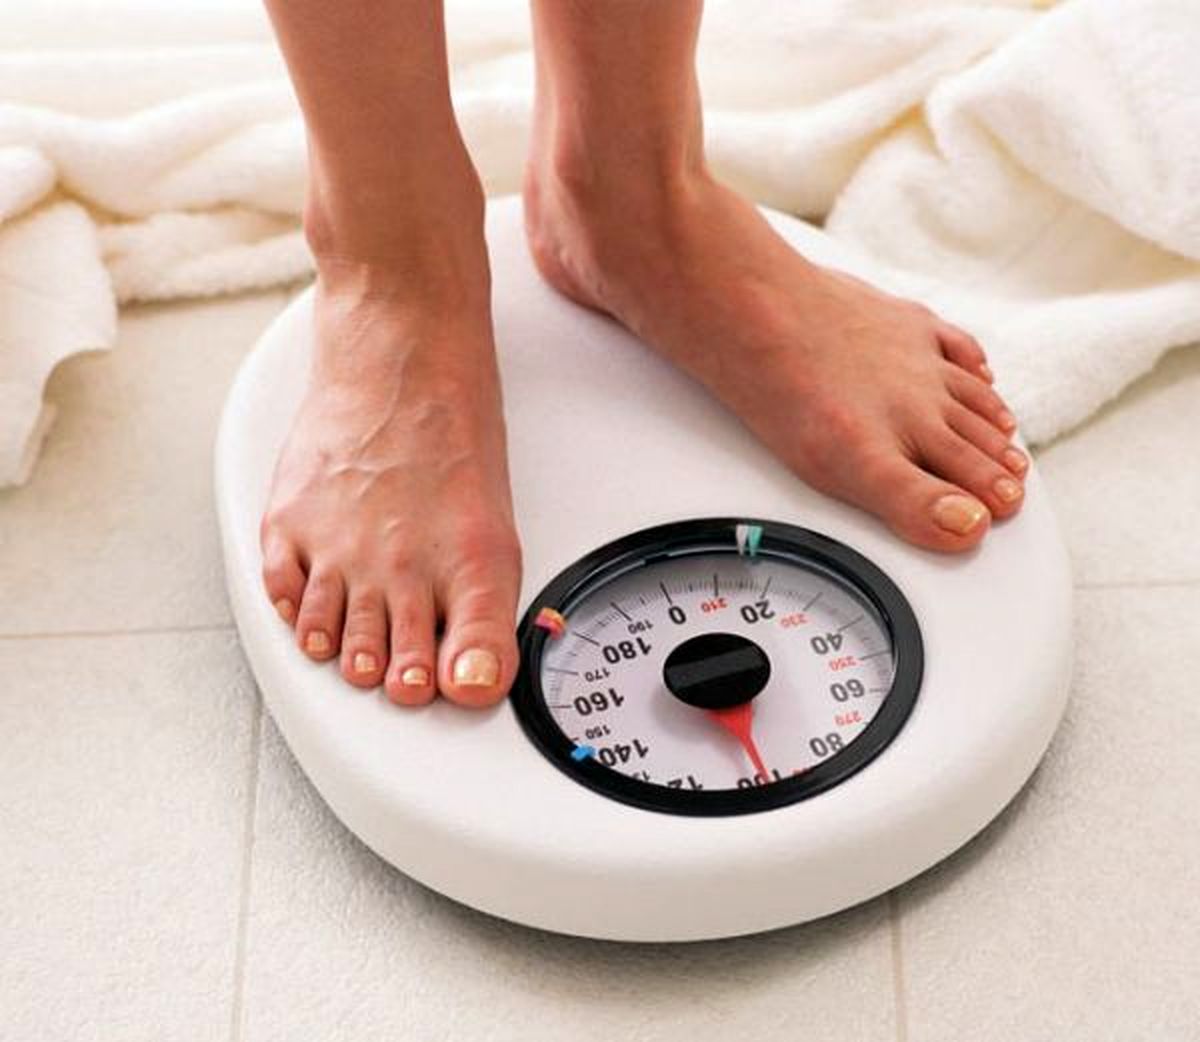 7 زمان نامناسب برای اندازه گیری وزن بدن